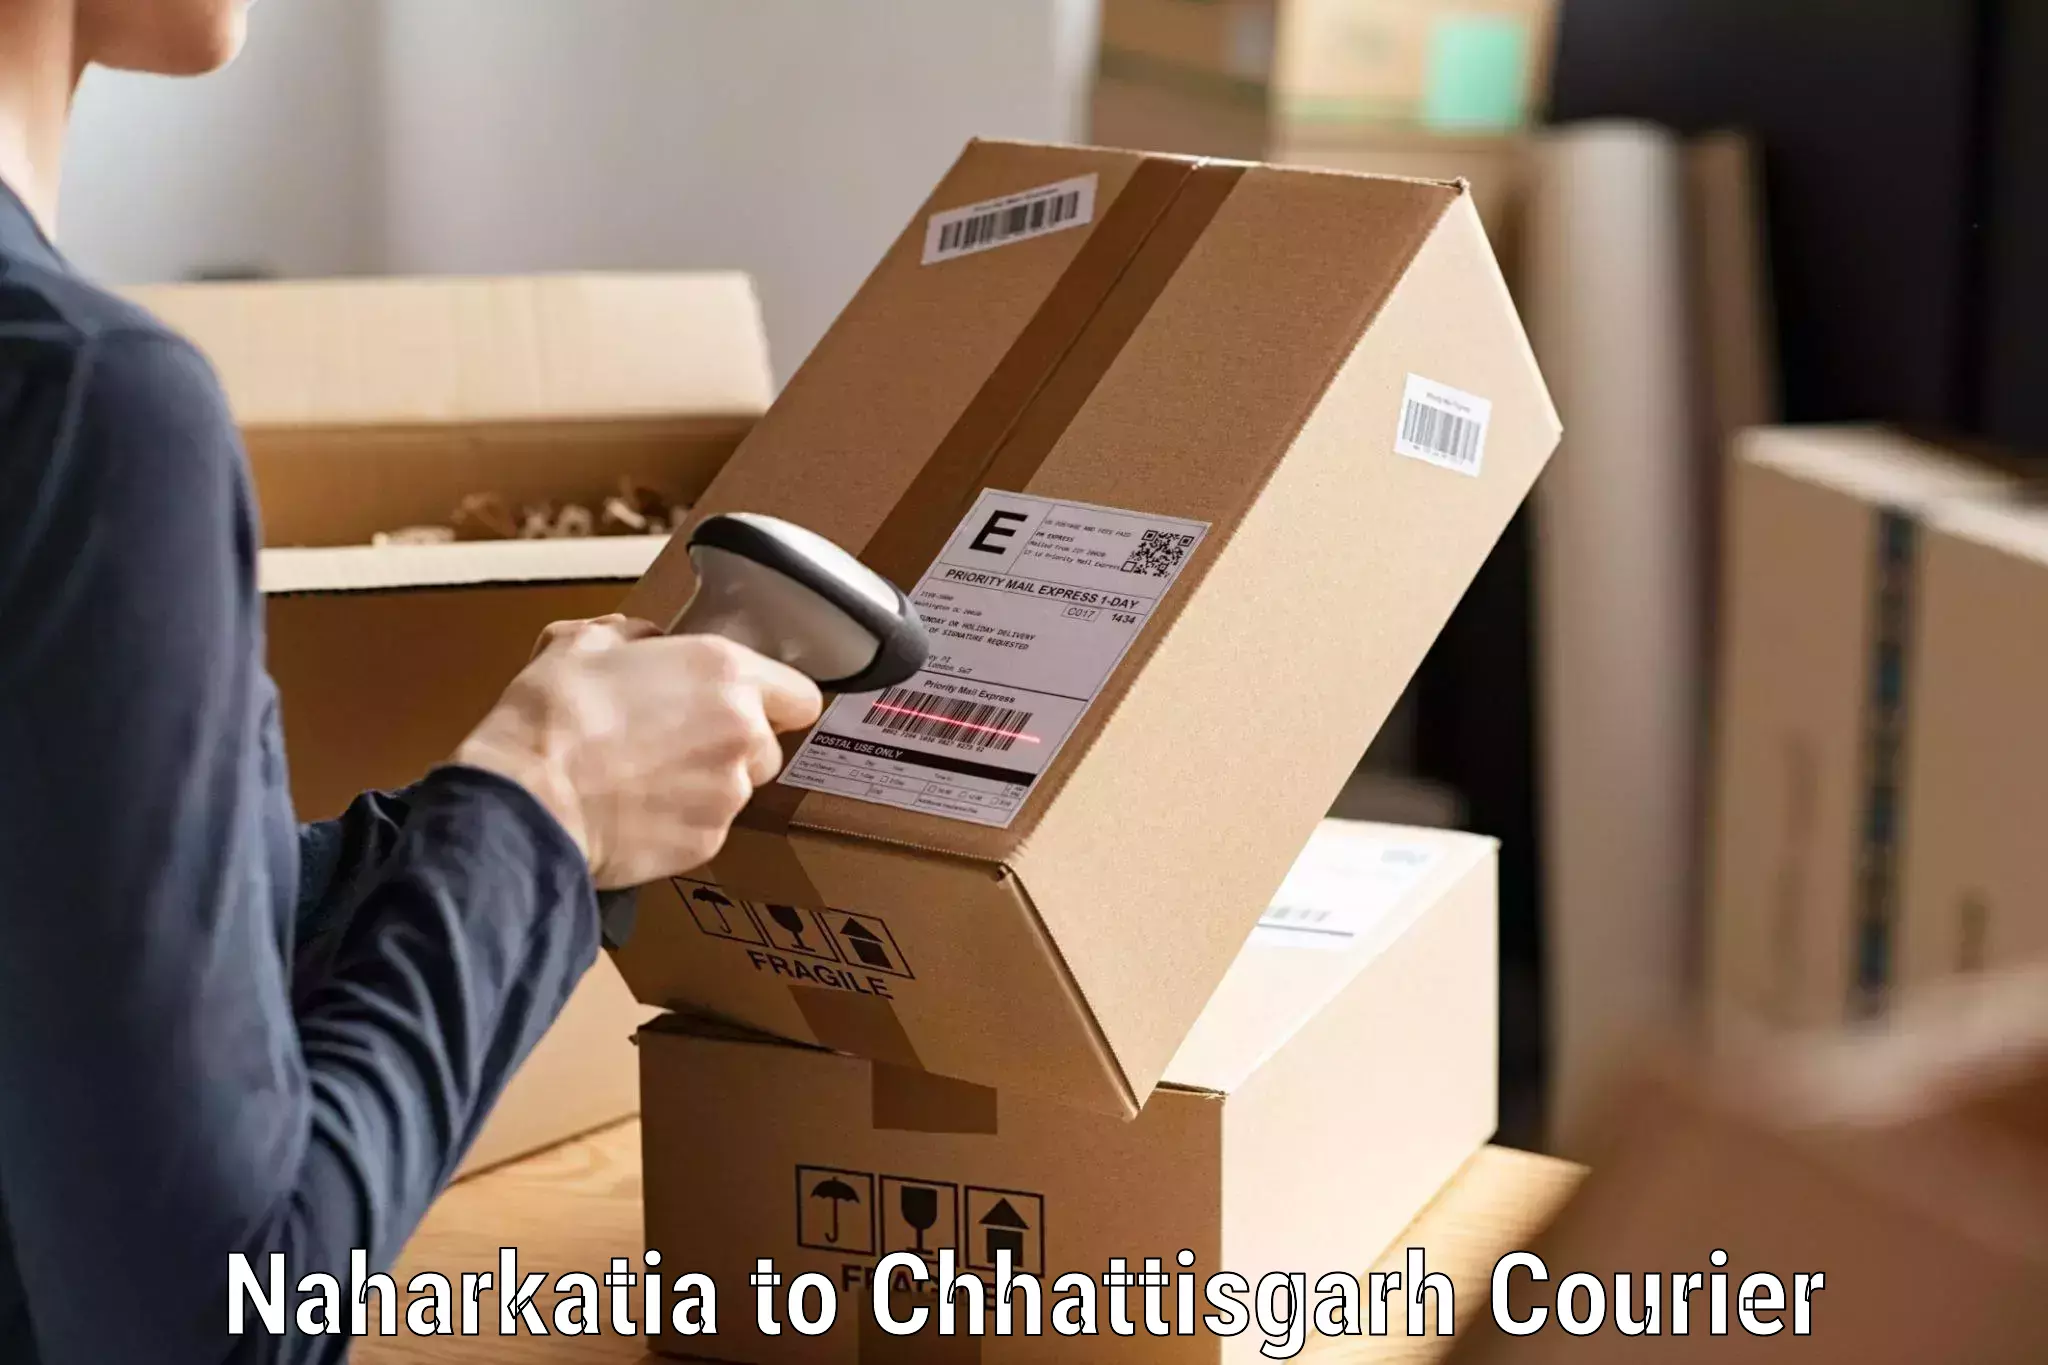 Cargo courier service Naharkatia to Chhattisgarh